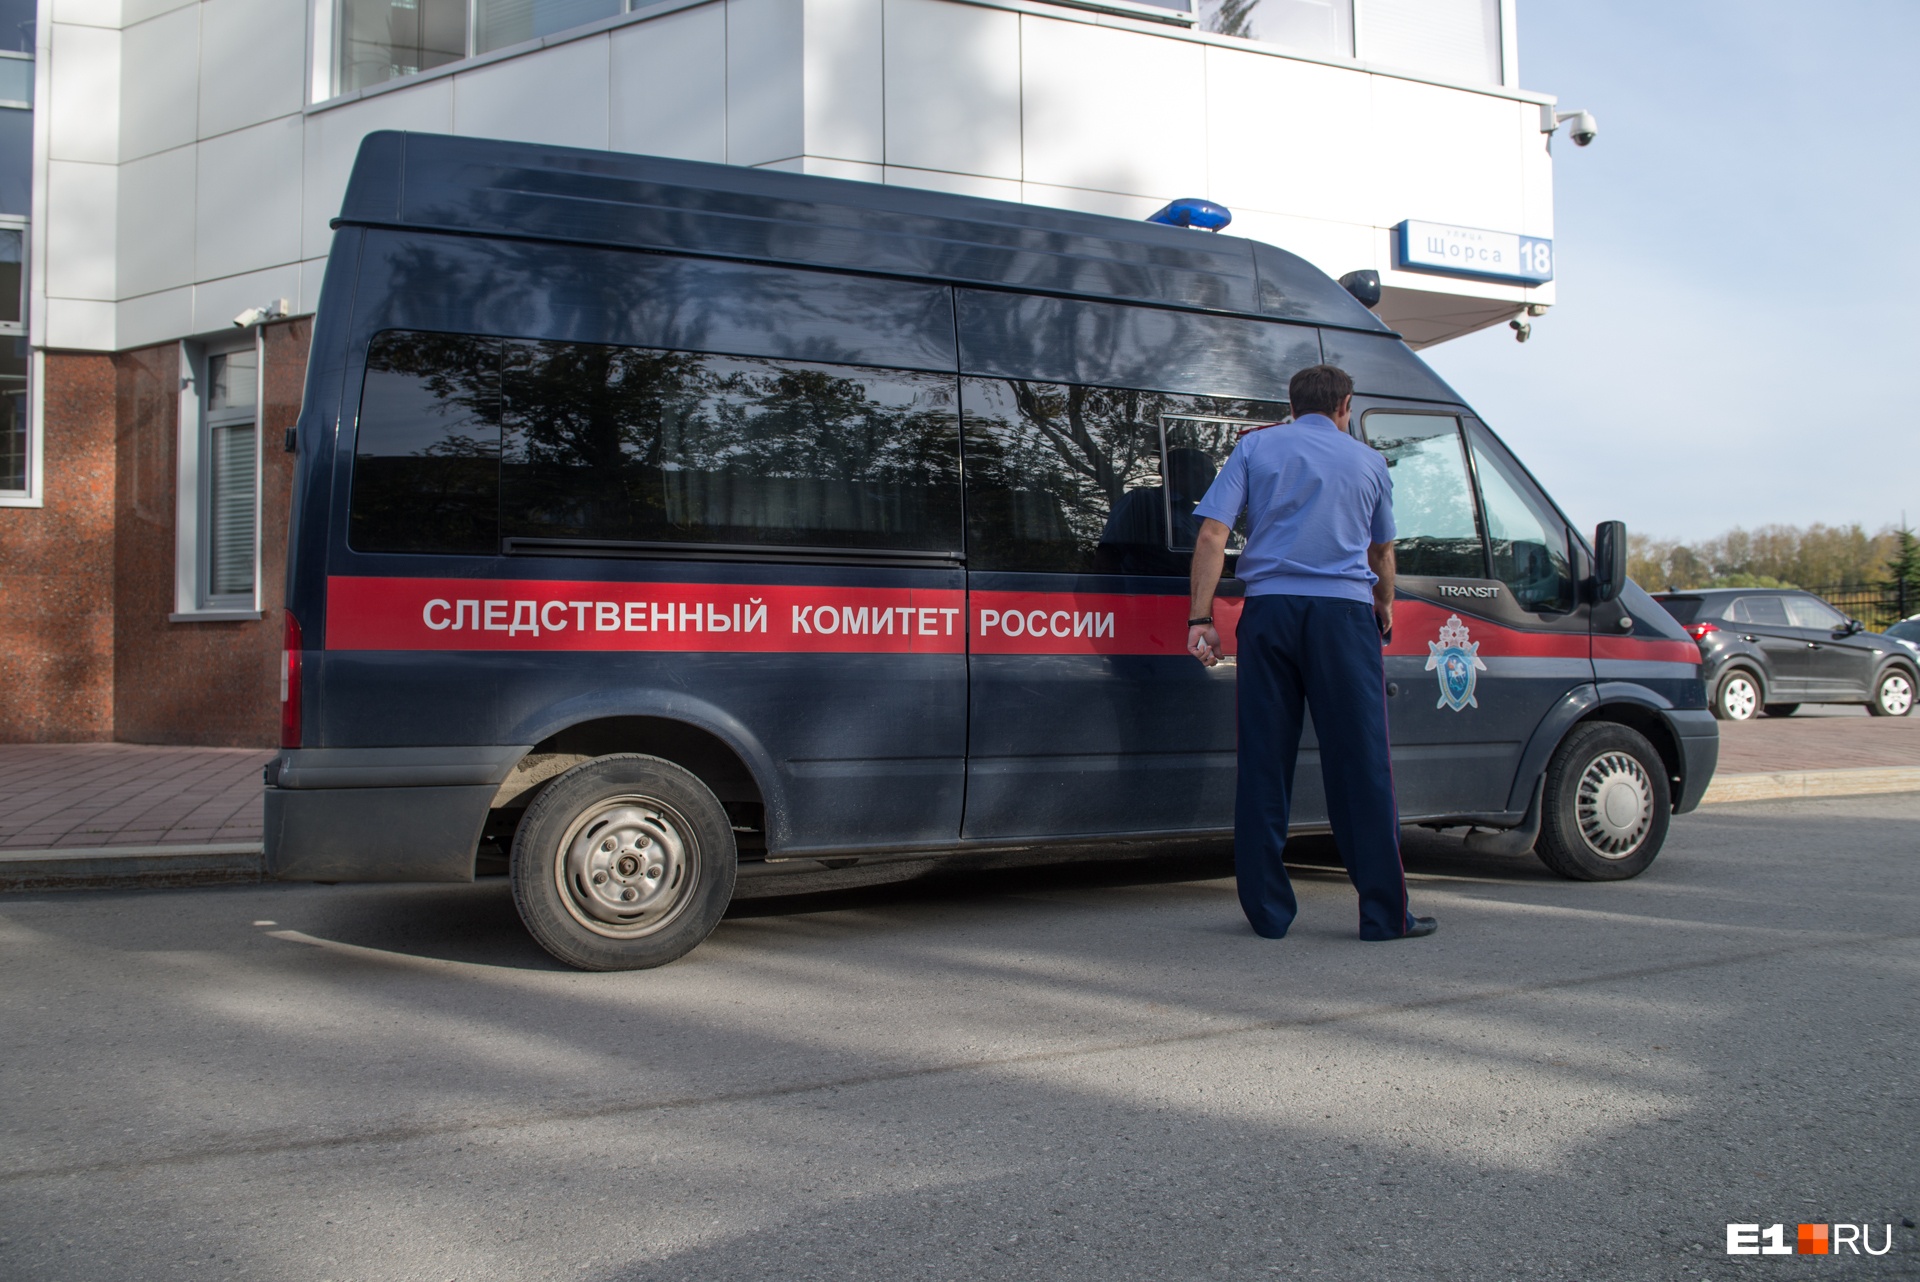 В Екатеринбурге разыскивают тюменских киллеров на черном Mercedes